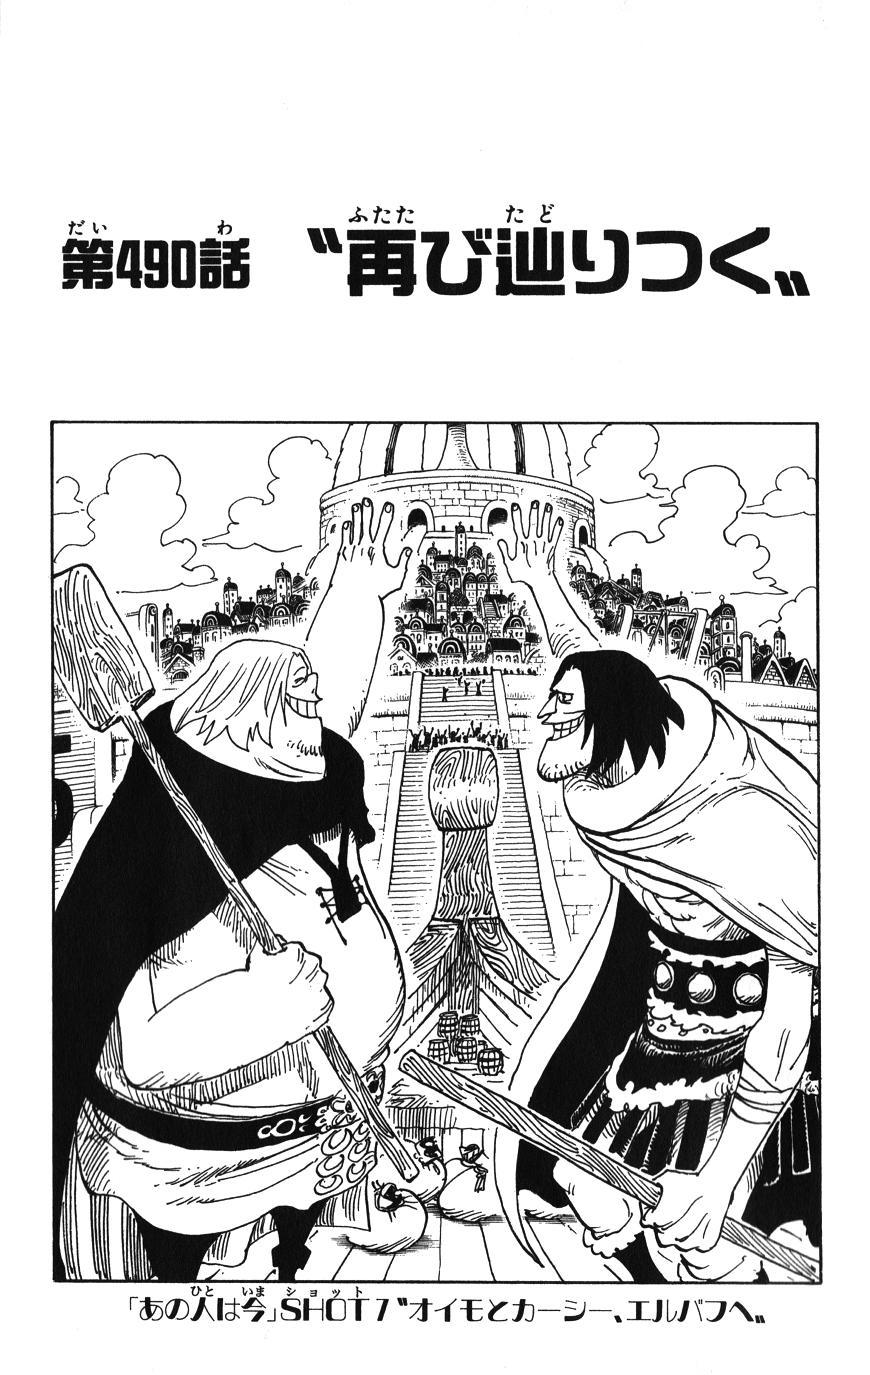 Chapitre 490 One Piece Encyclopedie Fandom